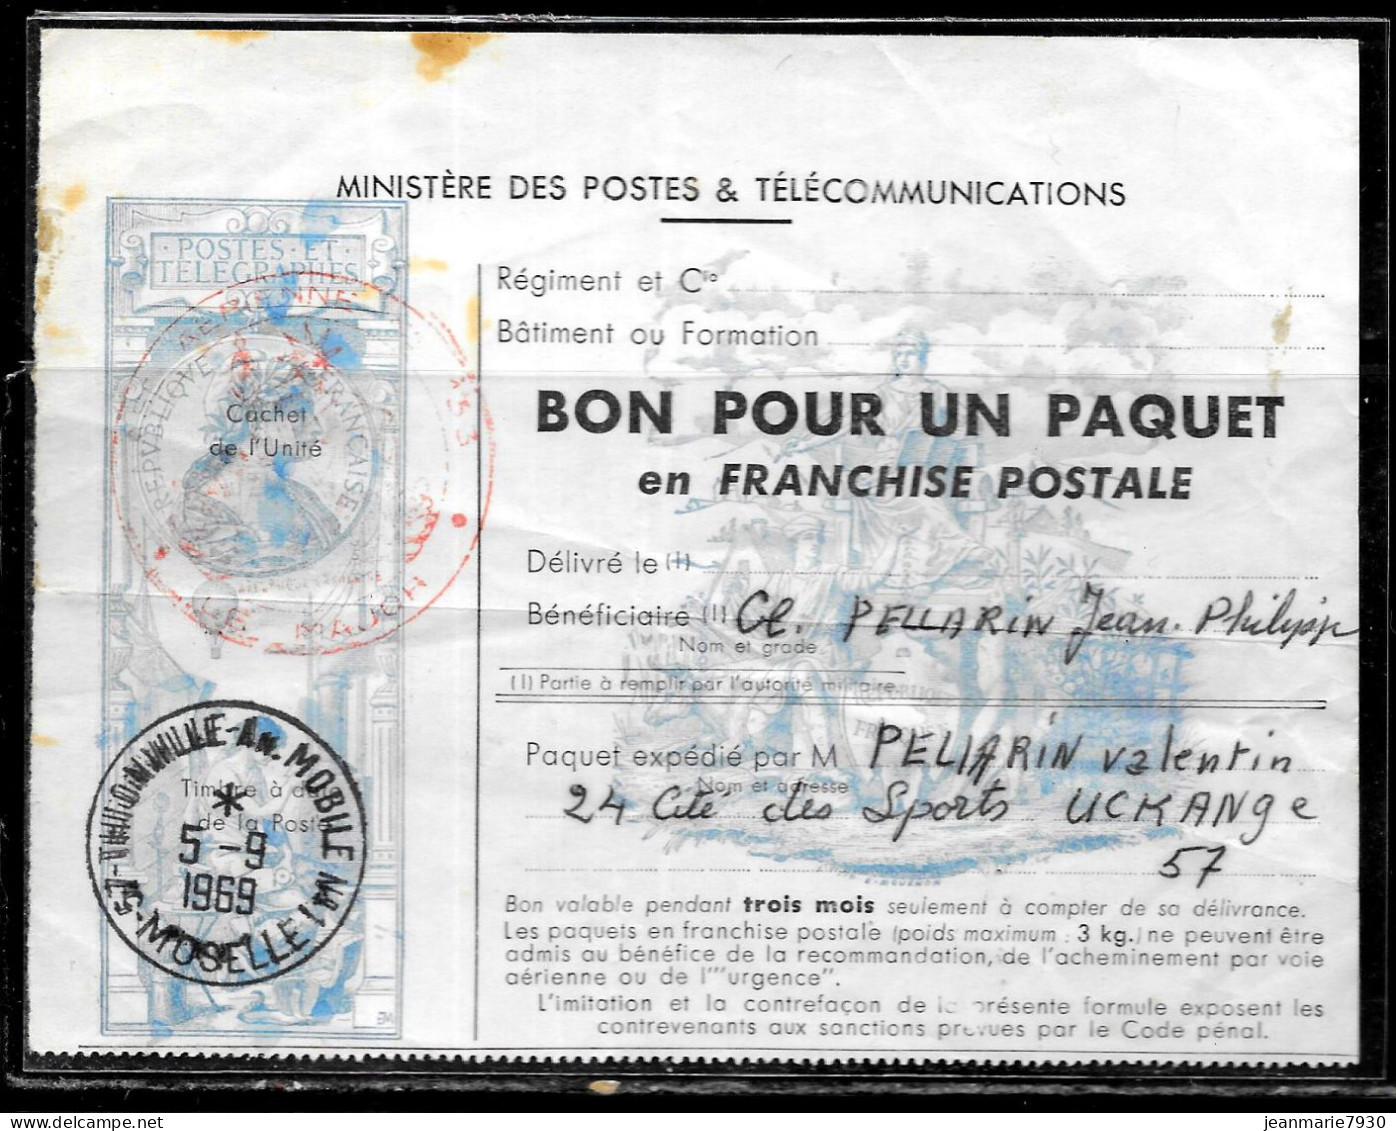 P191 - FRANCHISE MILITAIRE POUR COLIS DE THIONVILLE  An.MOBILE N°1 DU 05/09/69 - Lettres & Documents